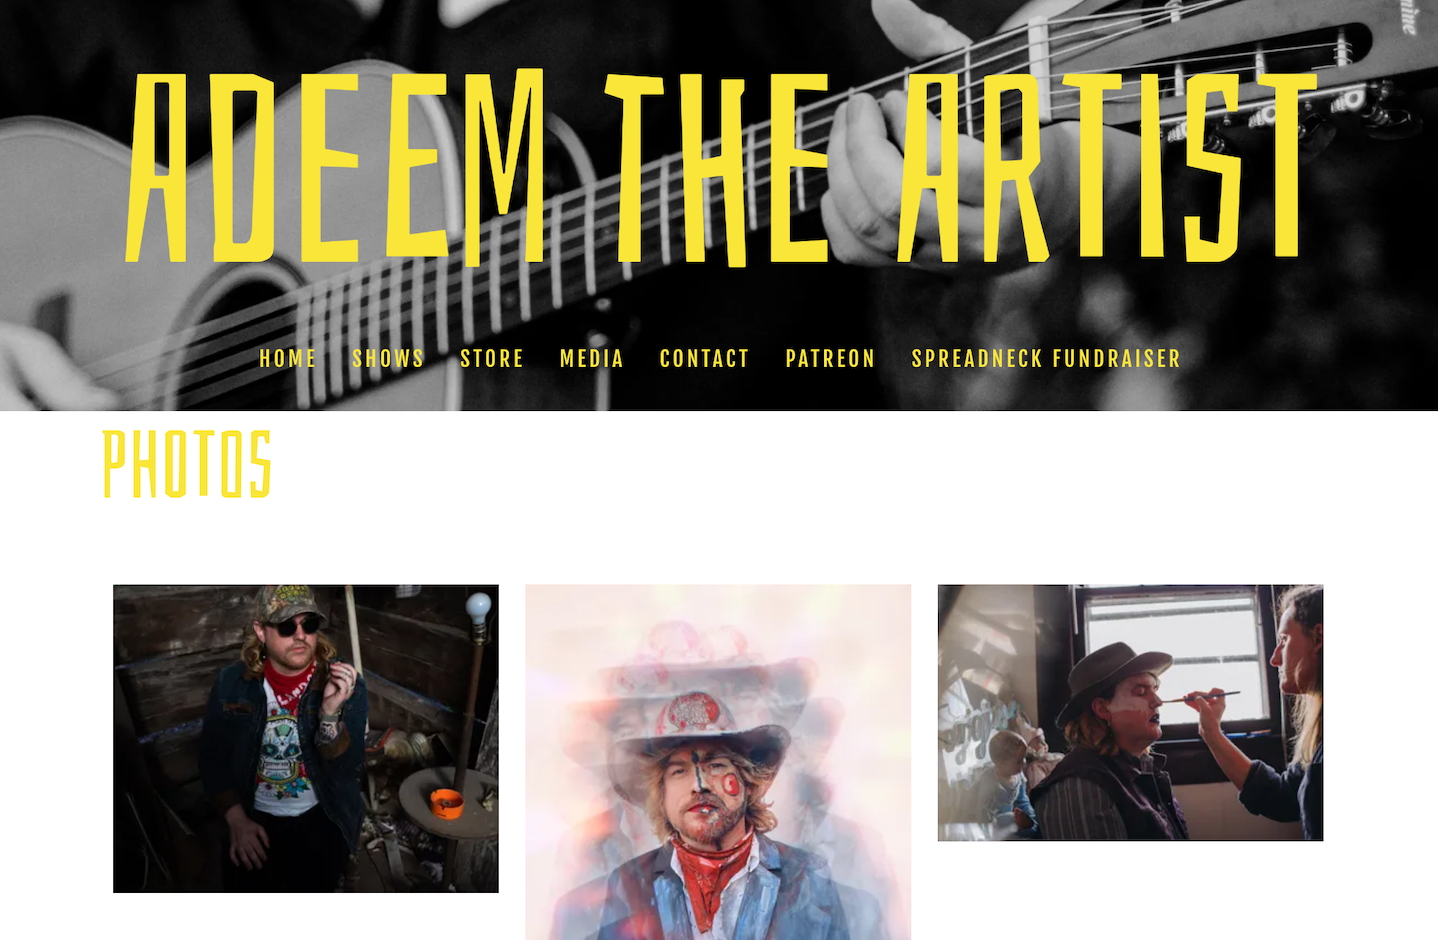 How to build a singer website: screenshot of artist Adeem the Artist's music website